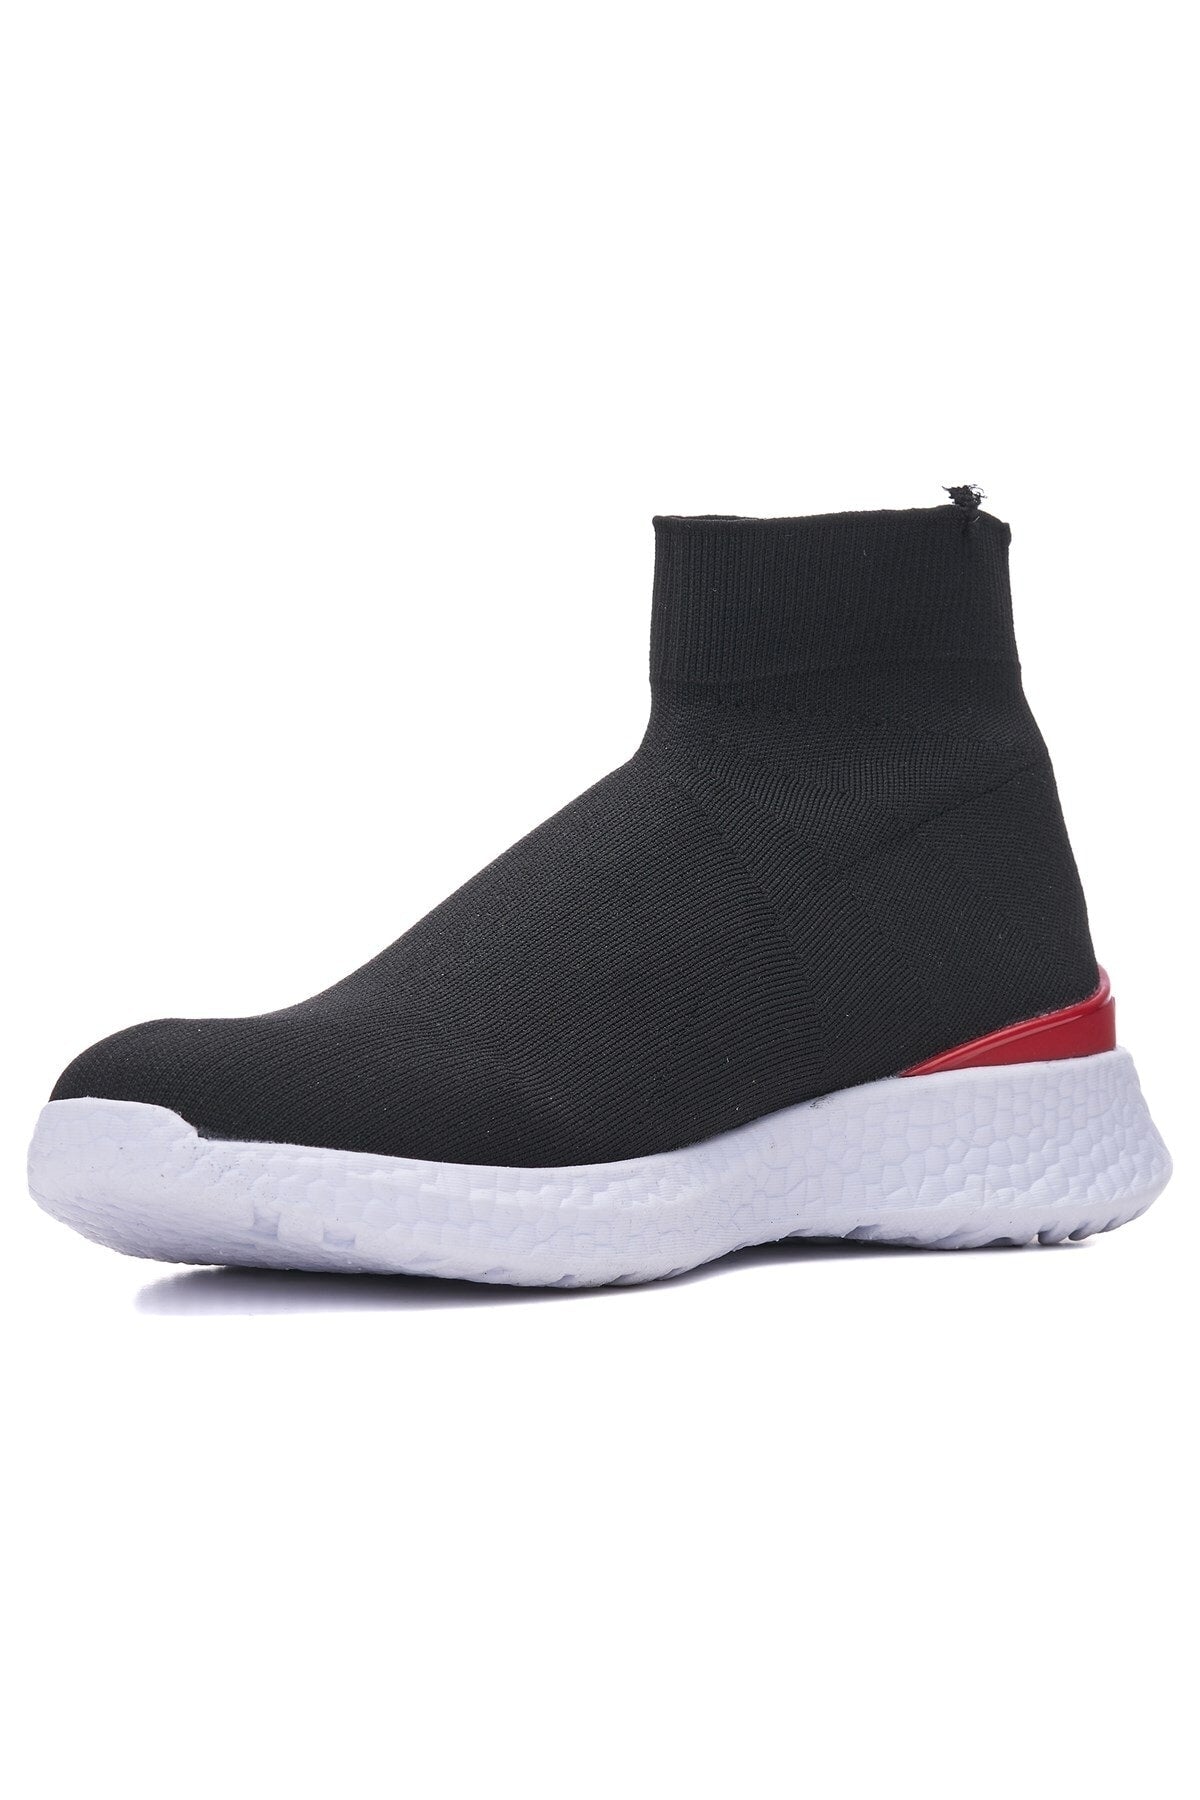 Daily Men's Black Red Sneaker Stretch Socks Formal Flexible Laceless Knitwear Sport Shoes 177m